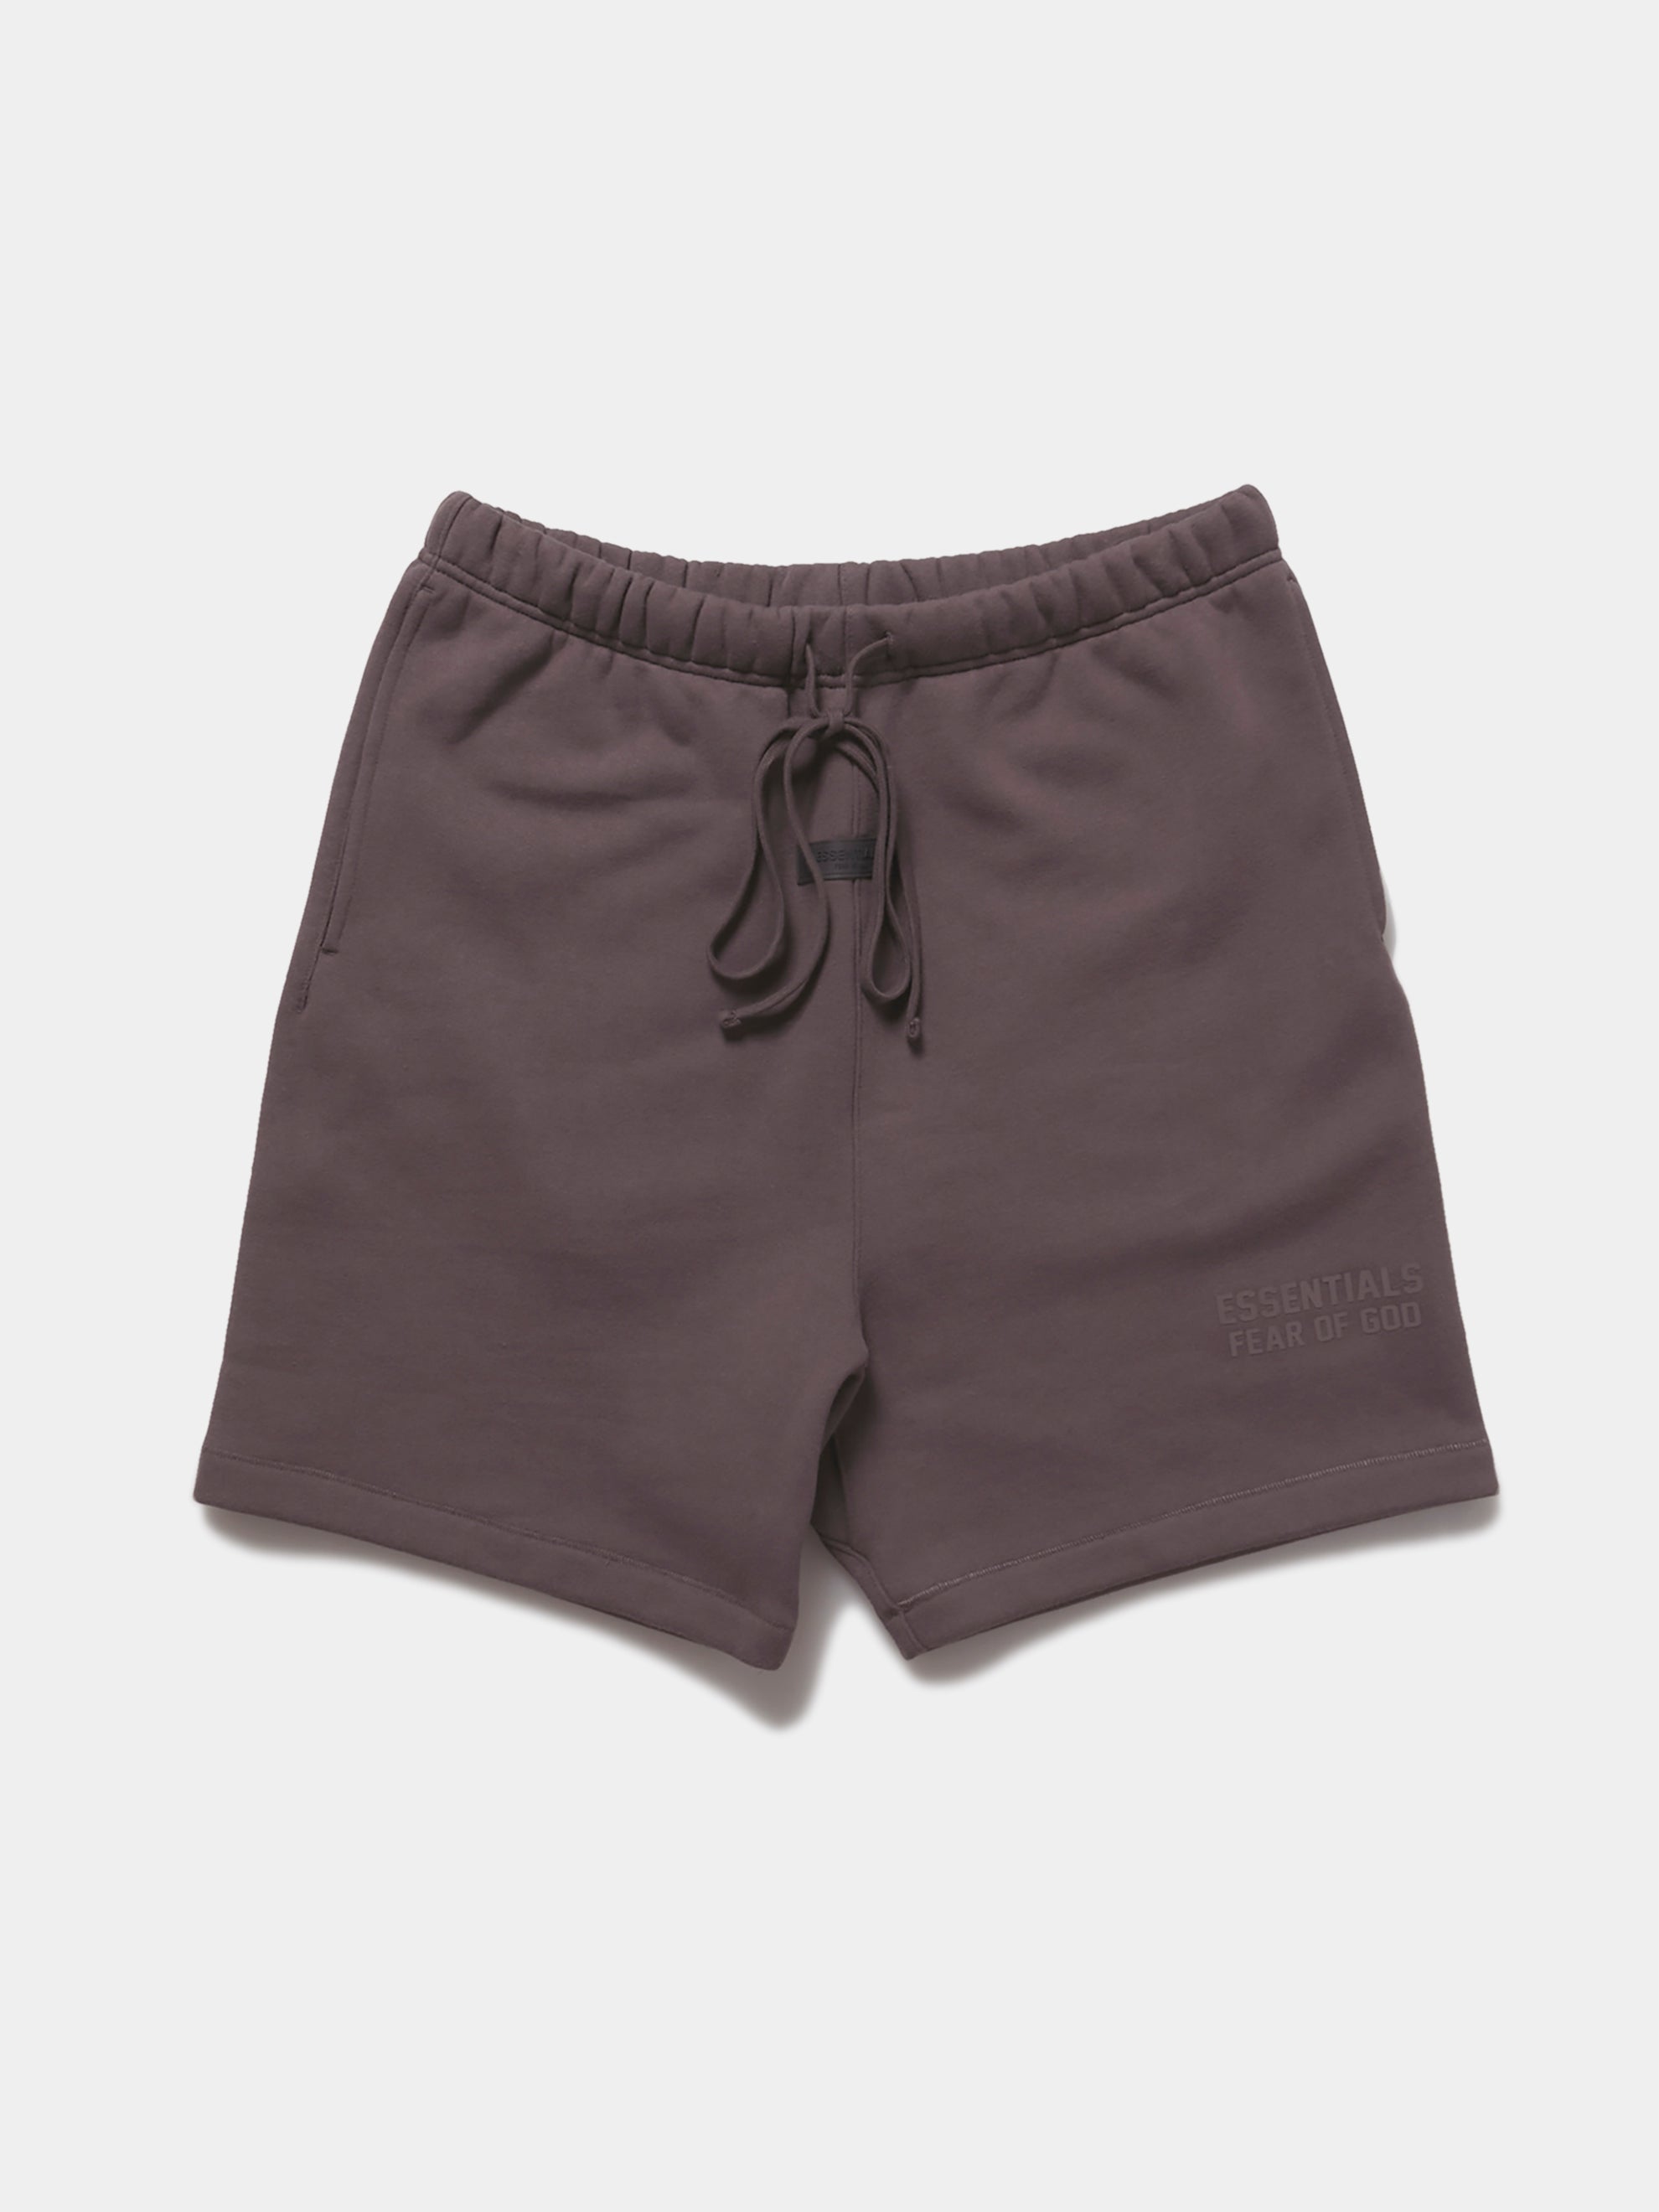 Essentials Shorts (Plum)